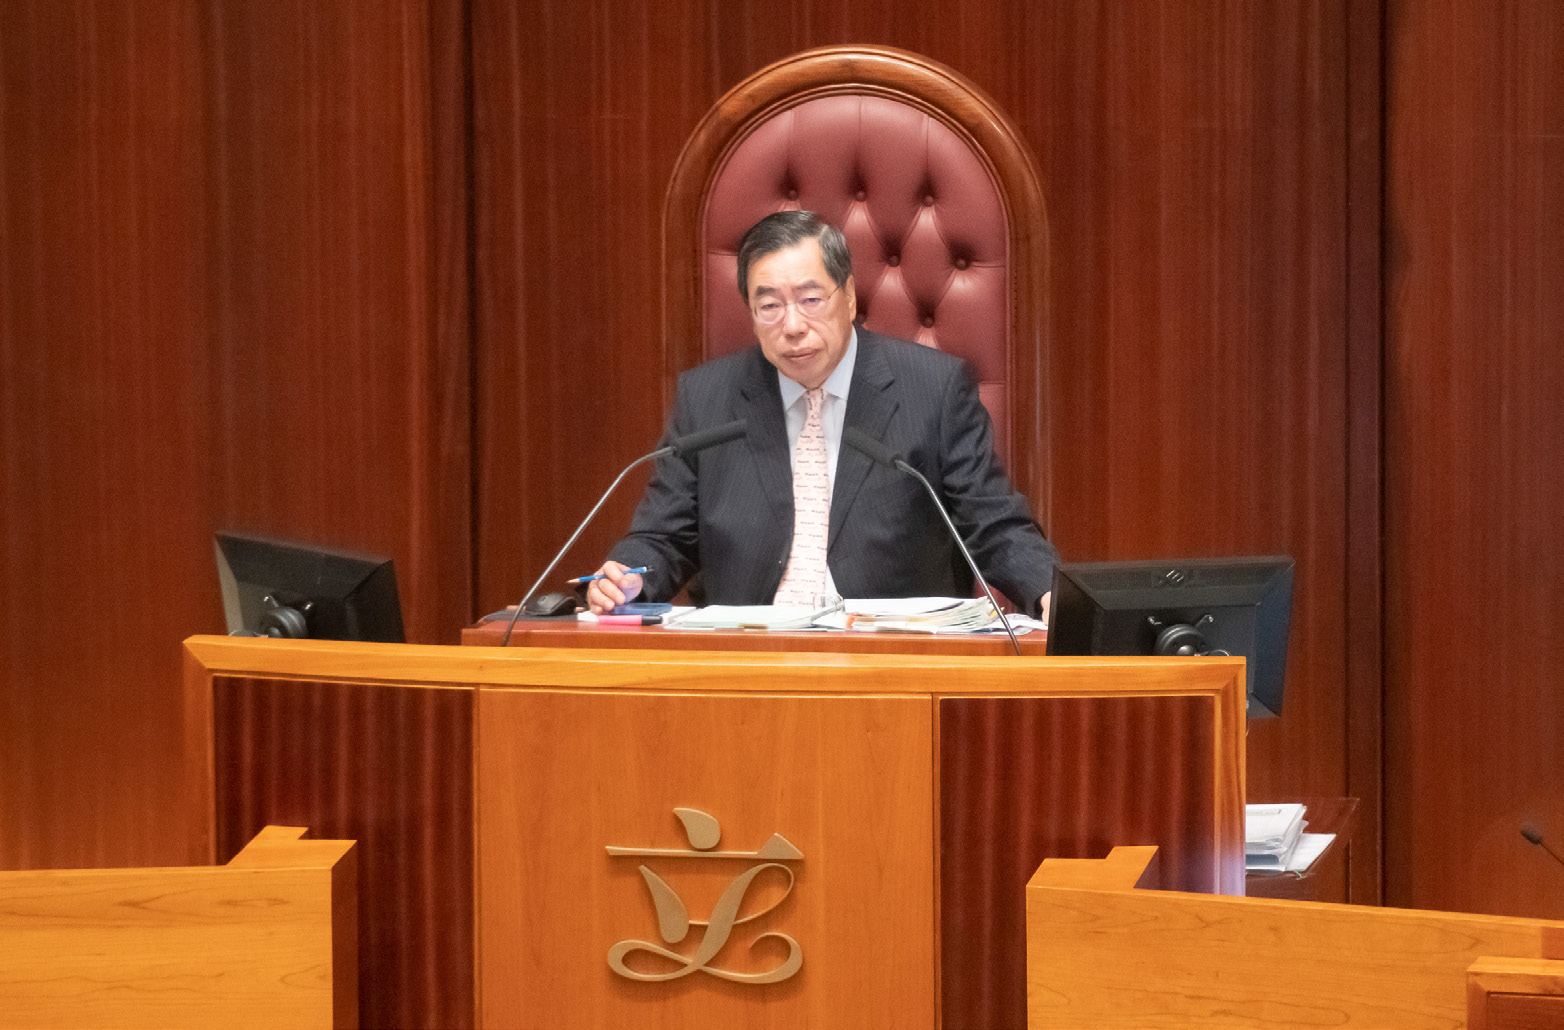 第七屆立法會主席梁君彥議員正在主持立法會會議